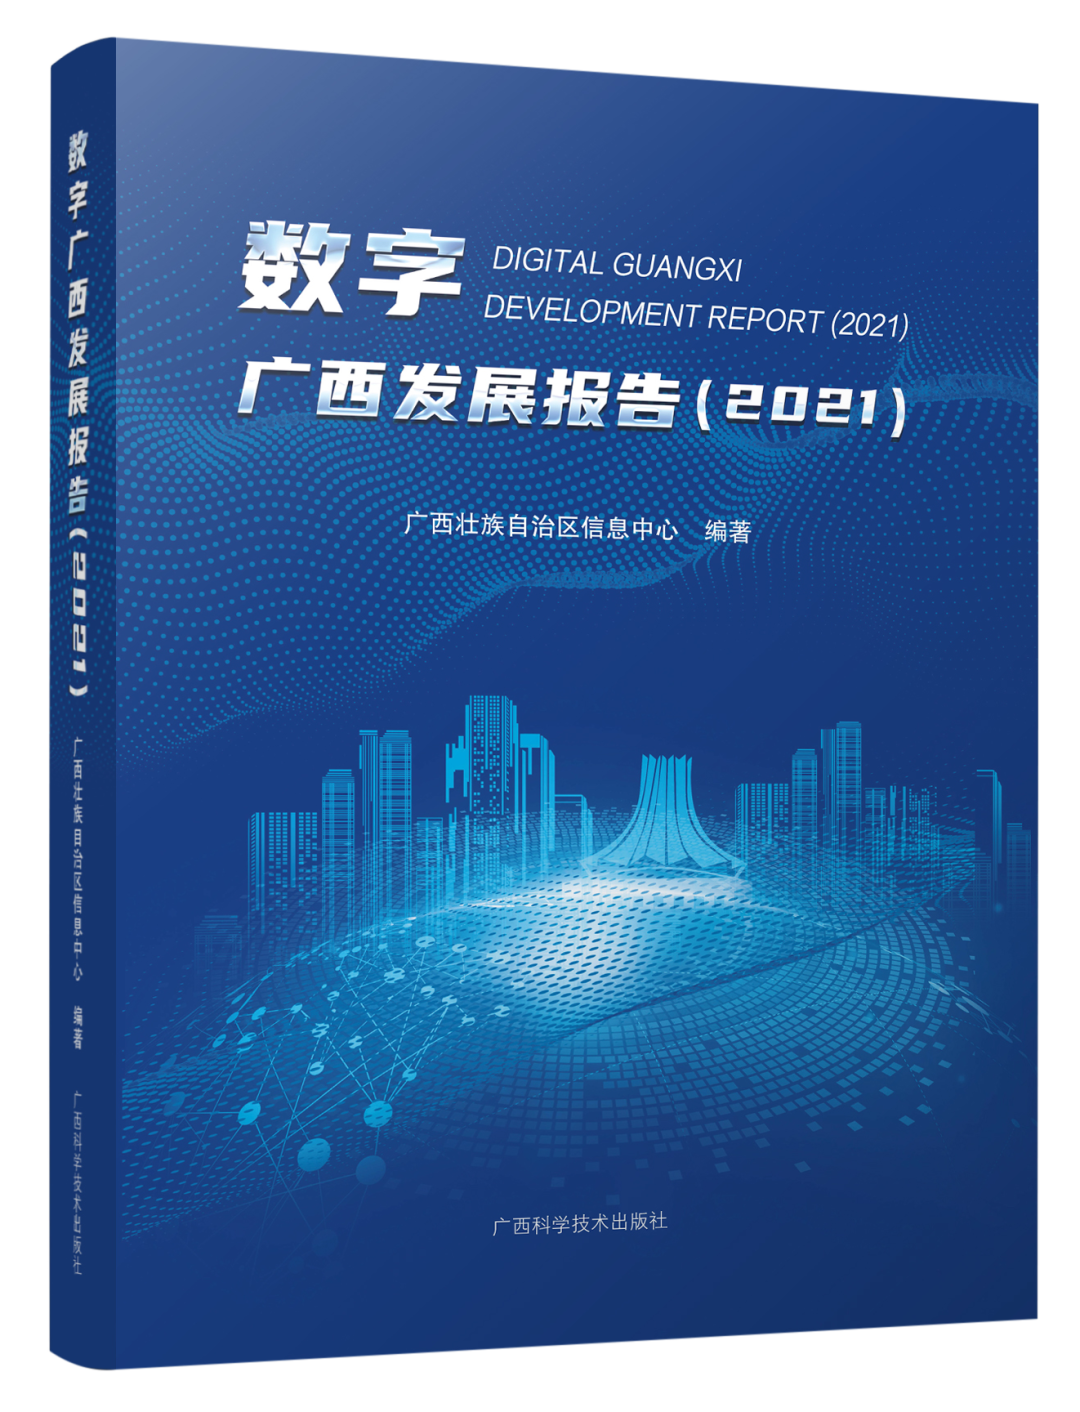 新书丨《数字广西发展报告（2021）》正式发布